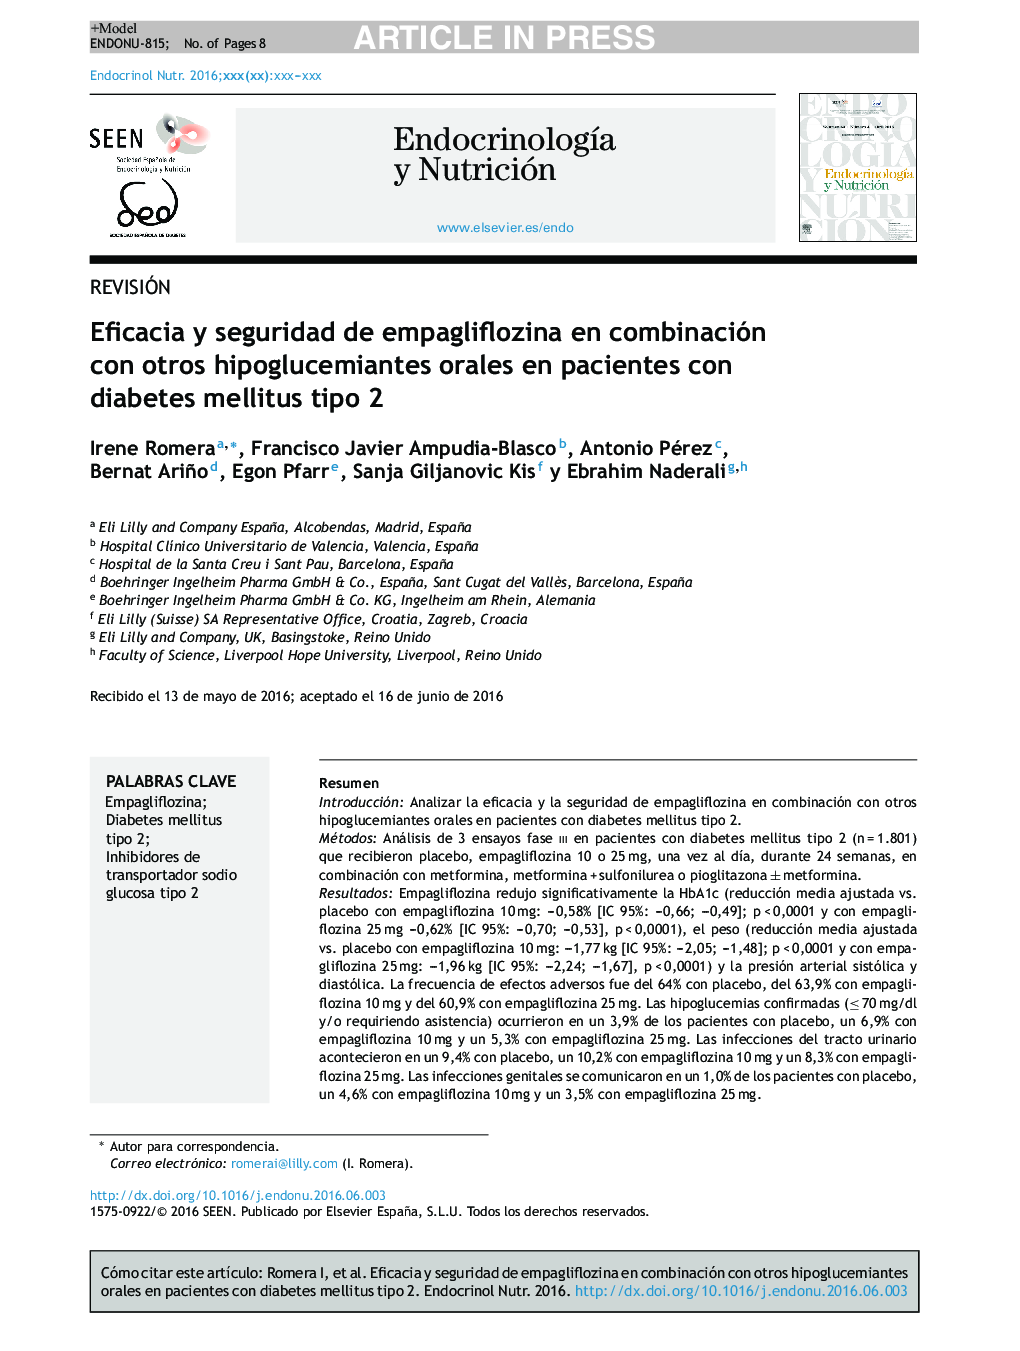 Eficacia y seguridad de empagliflozina en combinación con otros hipoglucemiantes orales en pacientes con diabetes mellitus tipo 2